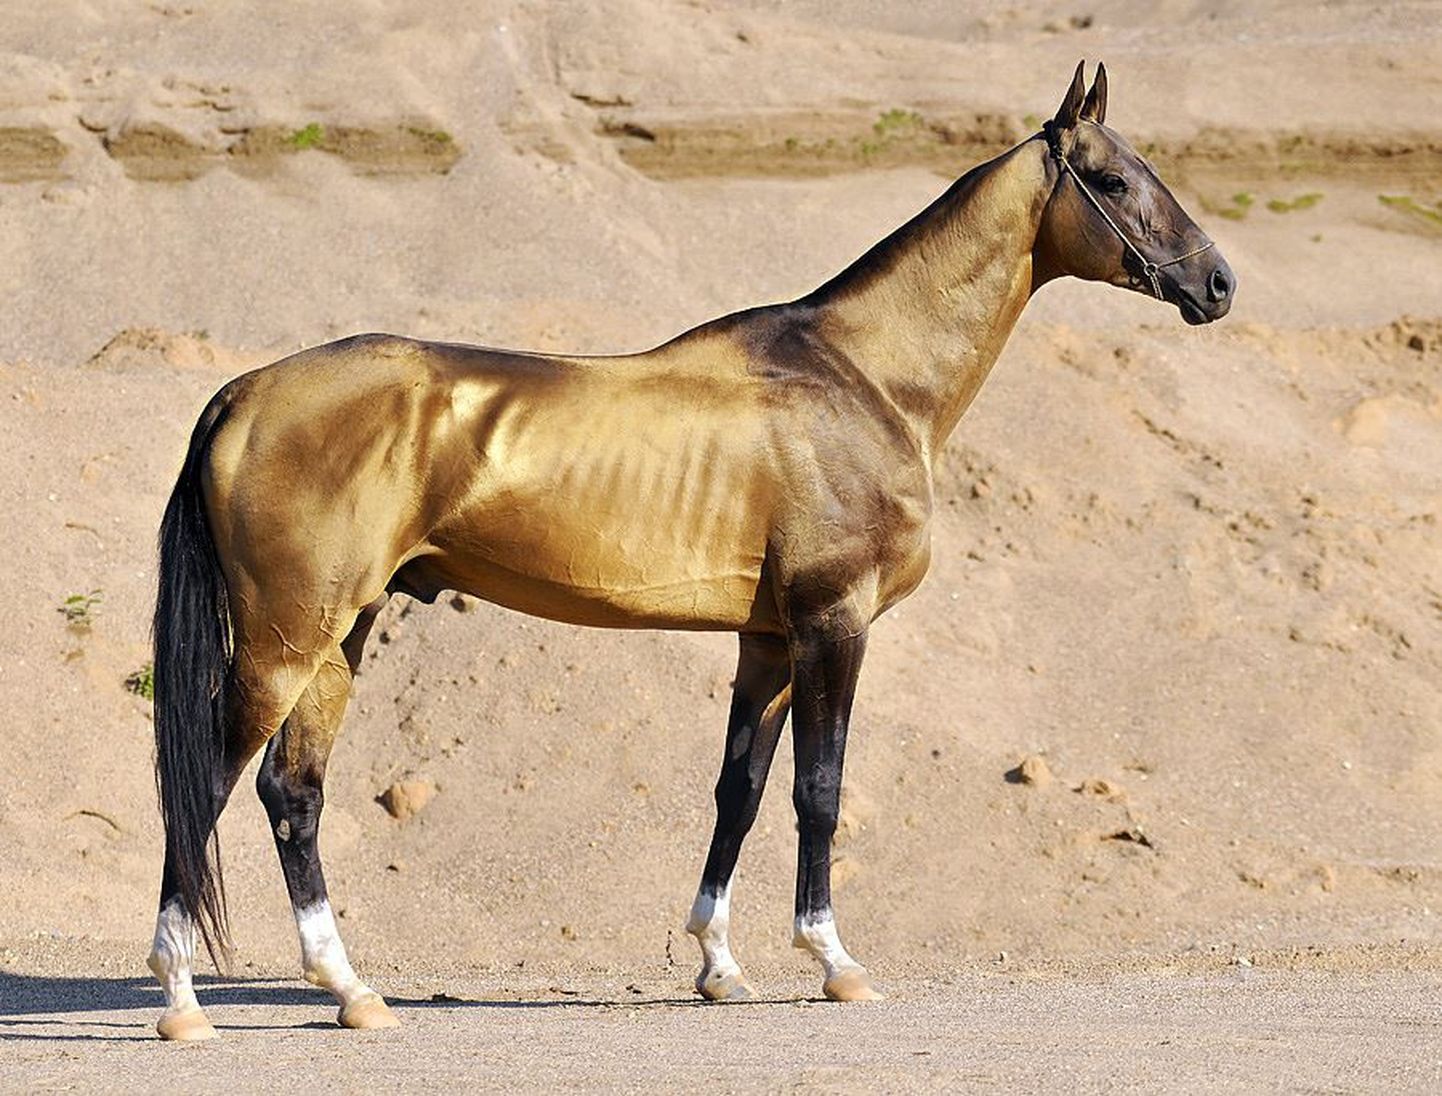 Ahhal-Tekiini hobune on iidsetele Turkomani hobustele lähim tänapäevane hobusetõug.